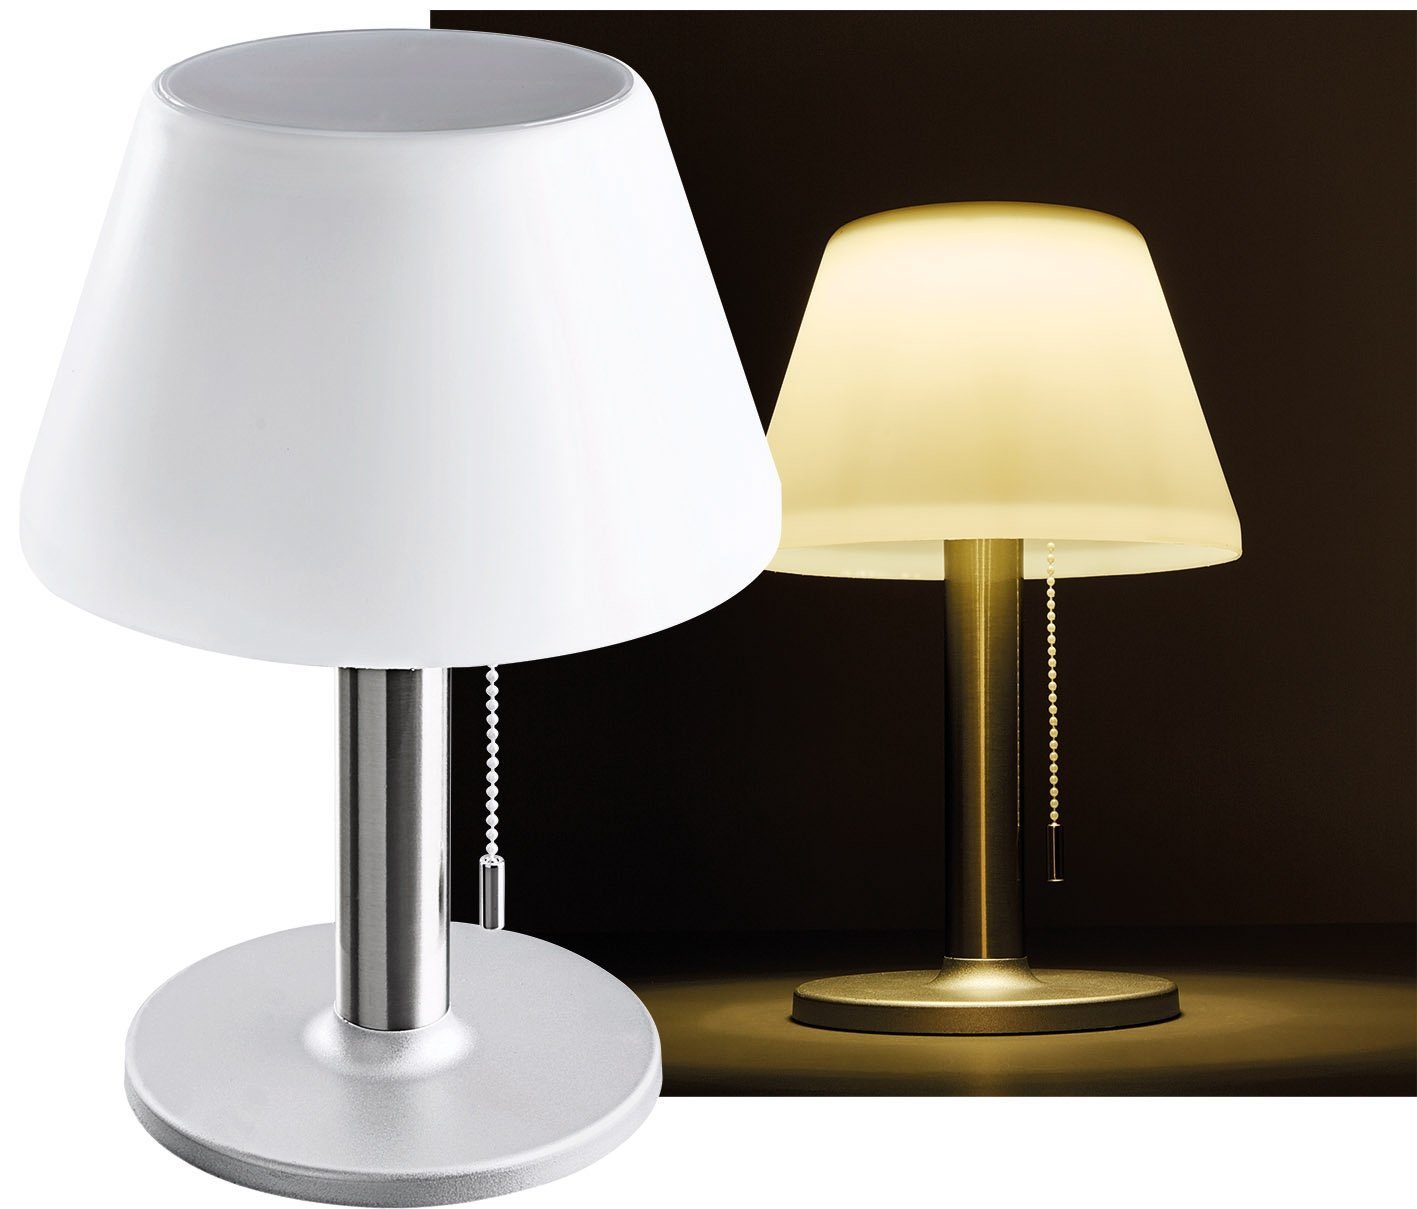 ChiliTec Tischleuchte LED Tischleuchte 28cm hoch, Ø20cm 5W, 3000K, warmweiß | Tischlampen